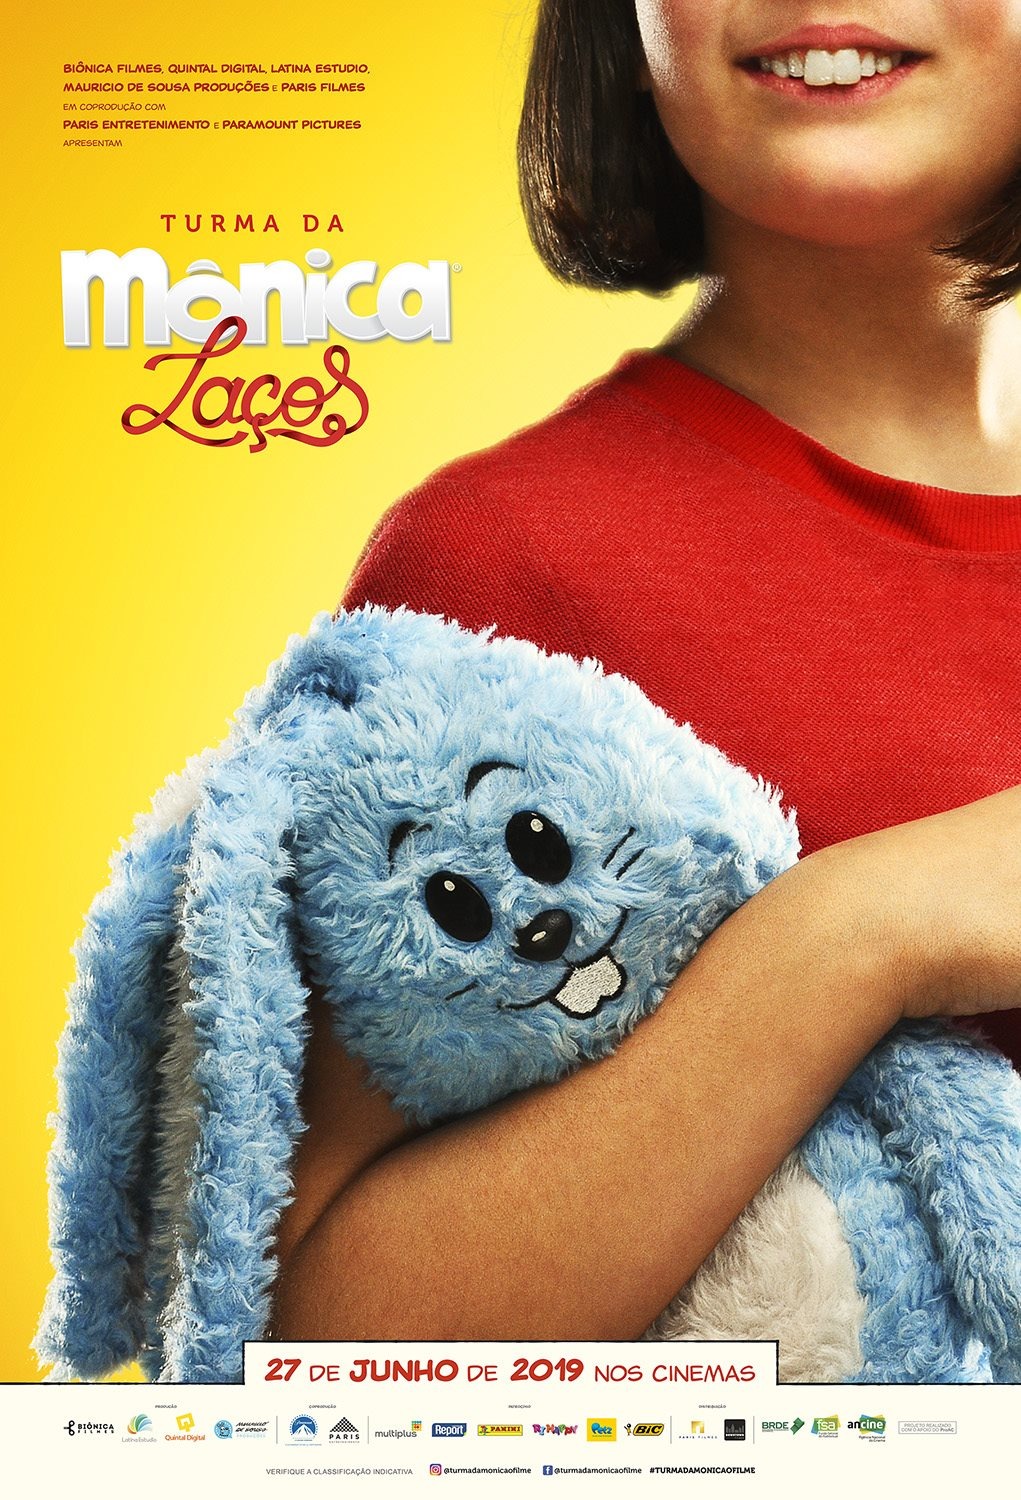 Extra Large Movie Poster Image for Turma da Mônica: Laços (#2 of 2)